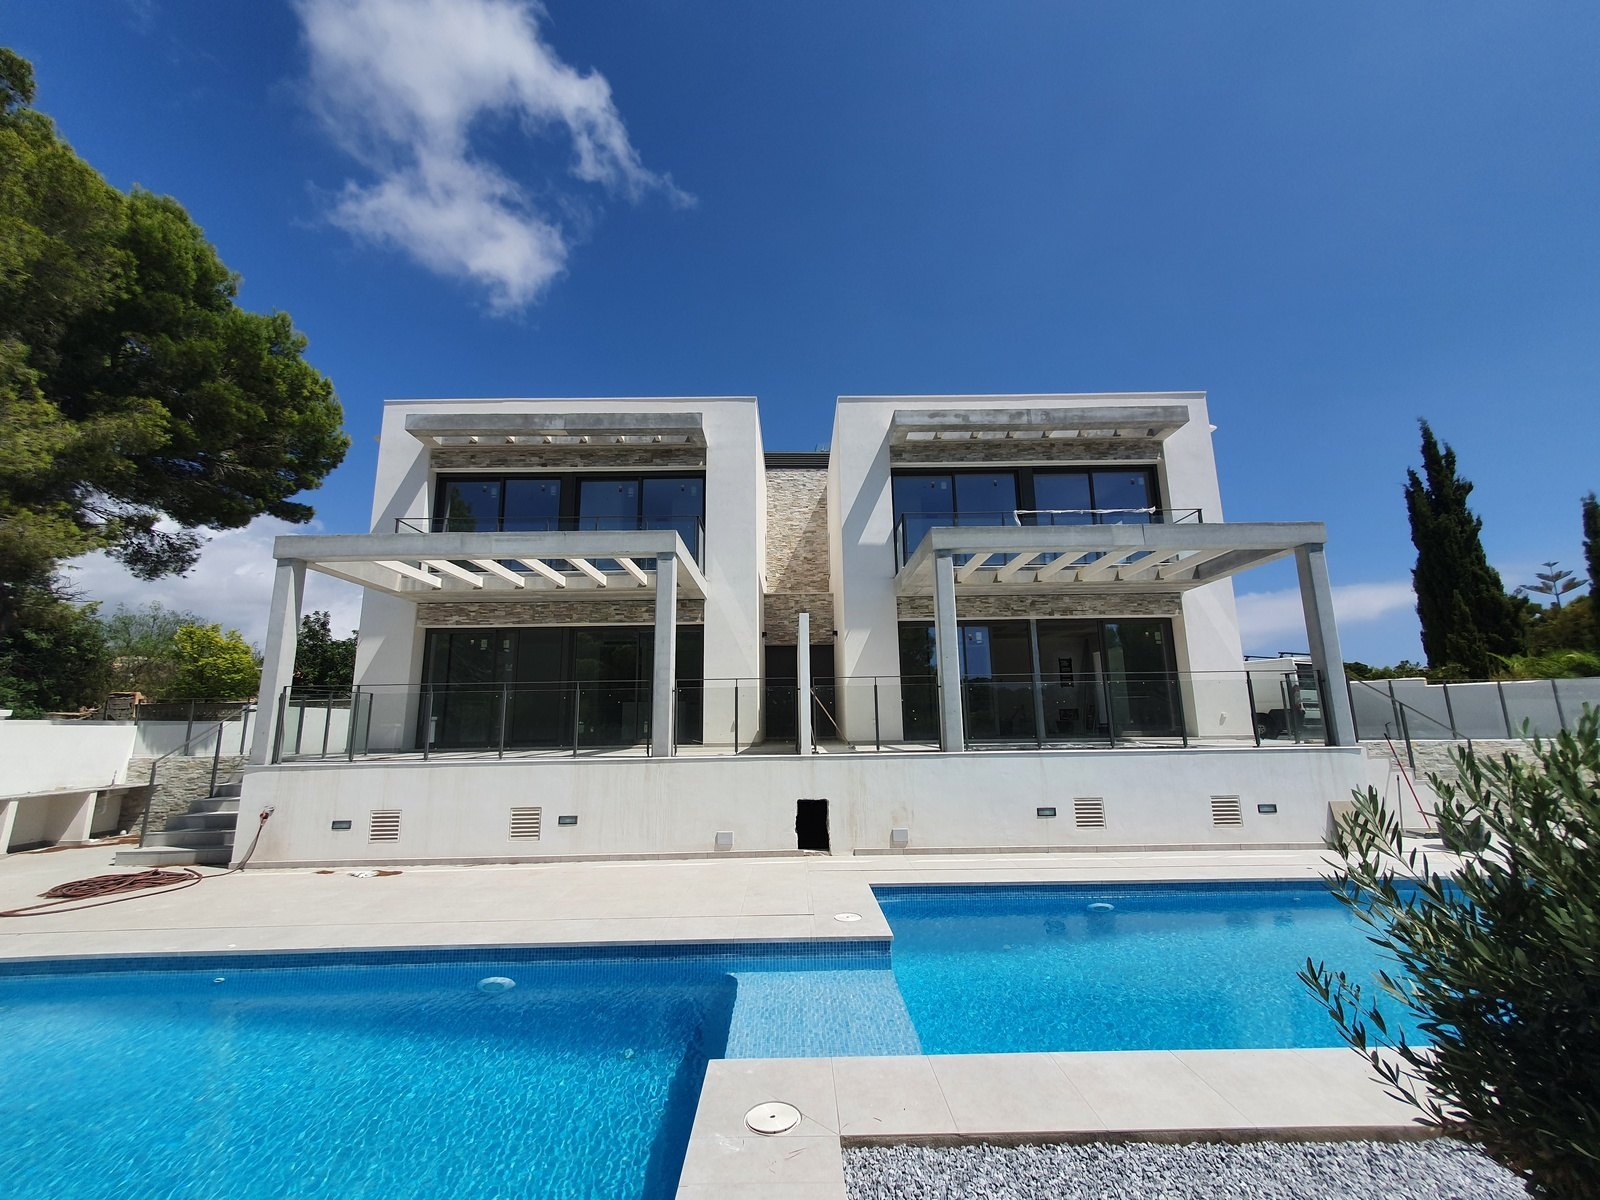 Villa/Pareado de nueva construcción con piscina en Moraira.